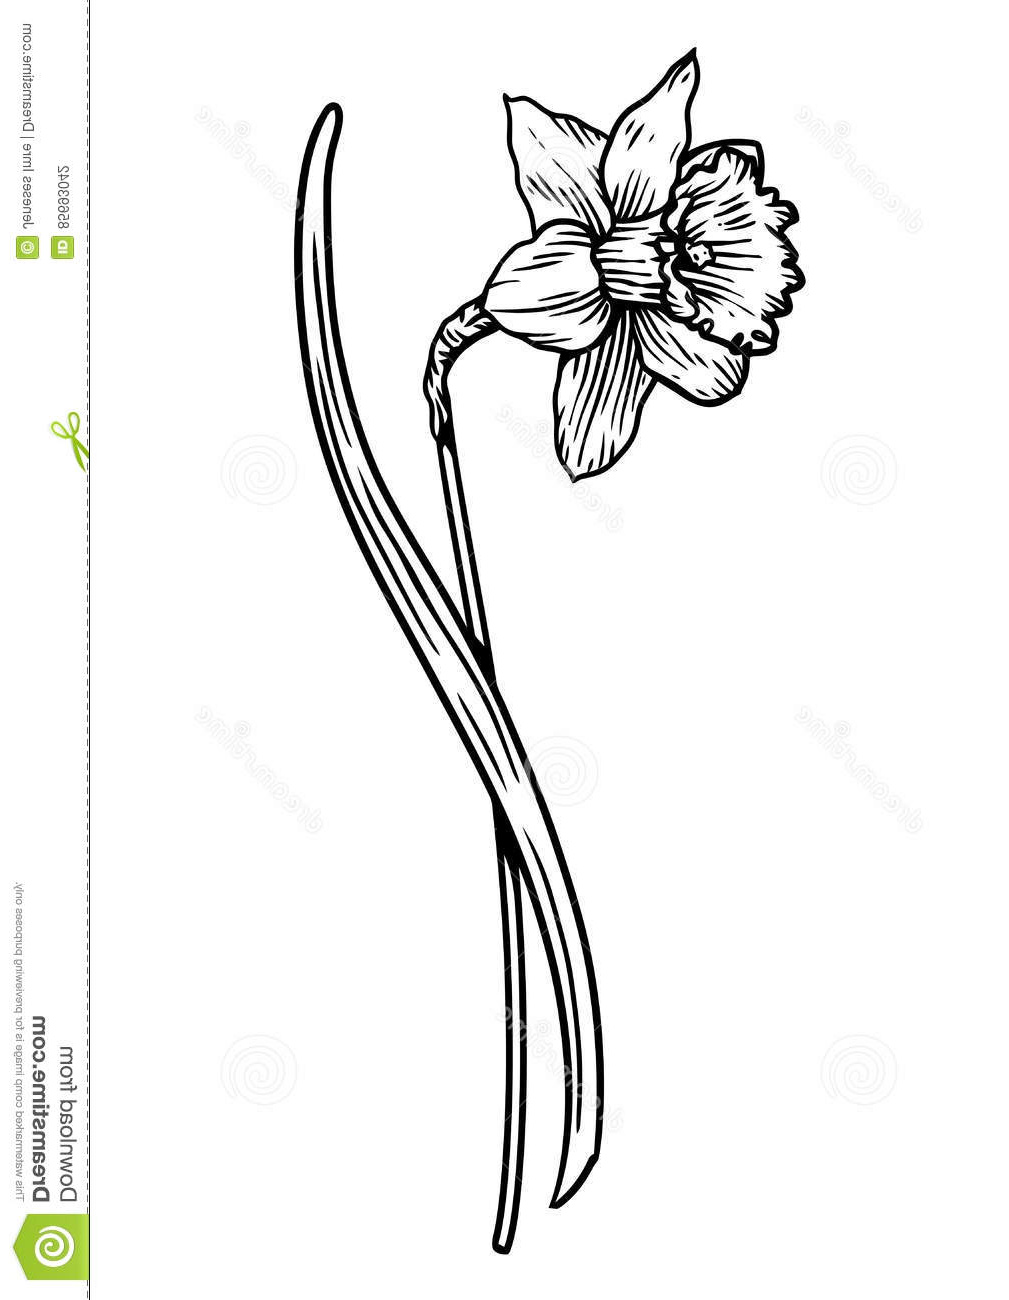 illustration stock illustration de fleur de jonquille dessin gravure schéma image